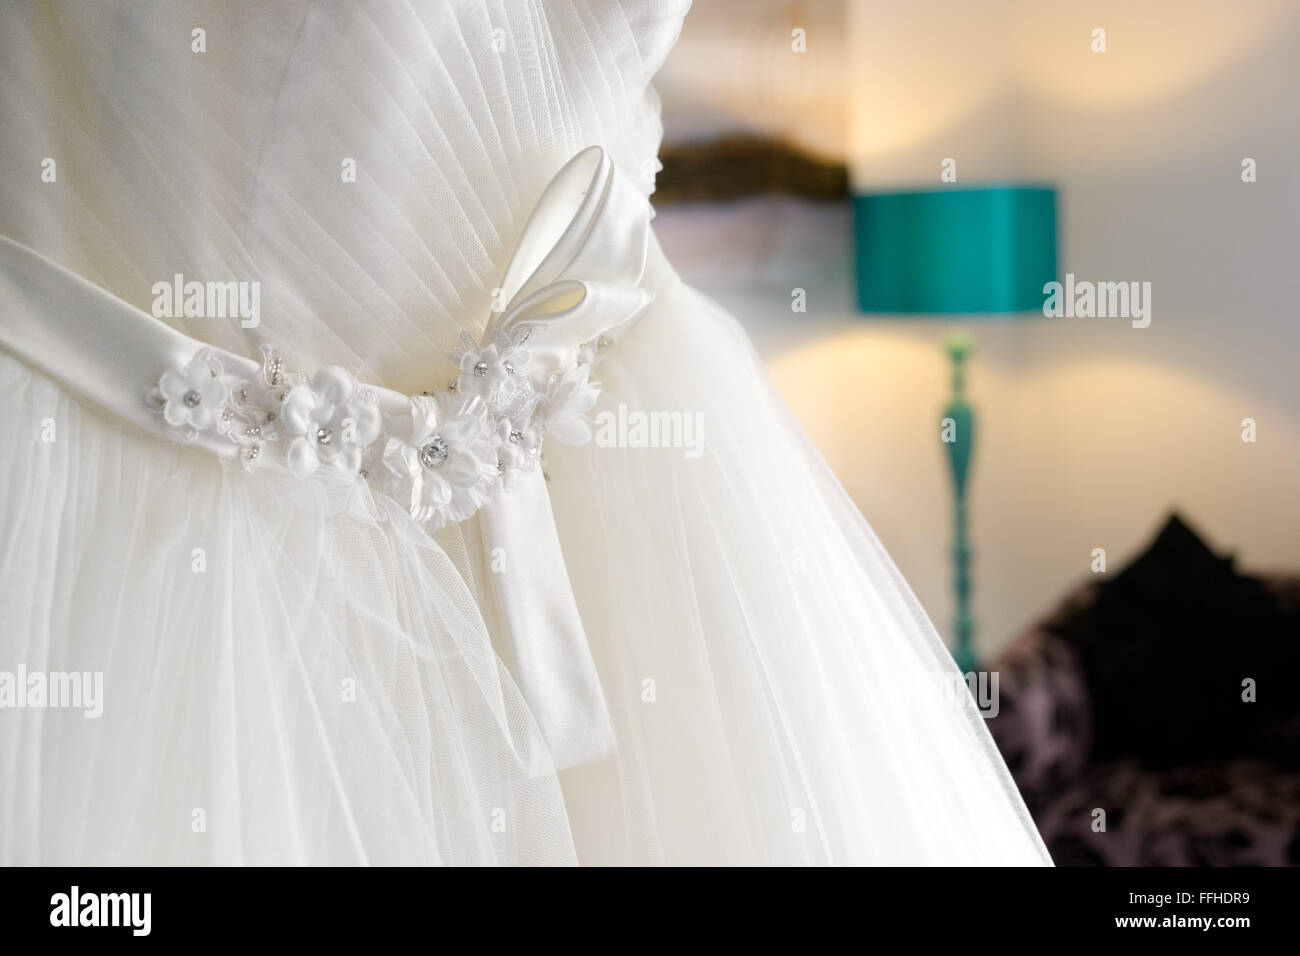 Un bianco tradizionale abito da sposa appeso in una camera da letto in attesa di una sposa per metterlo su Foto Stock